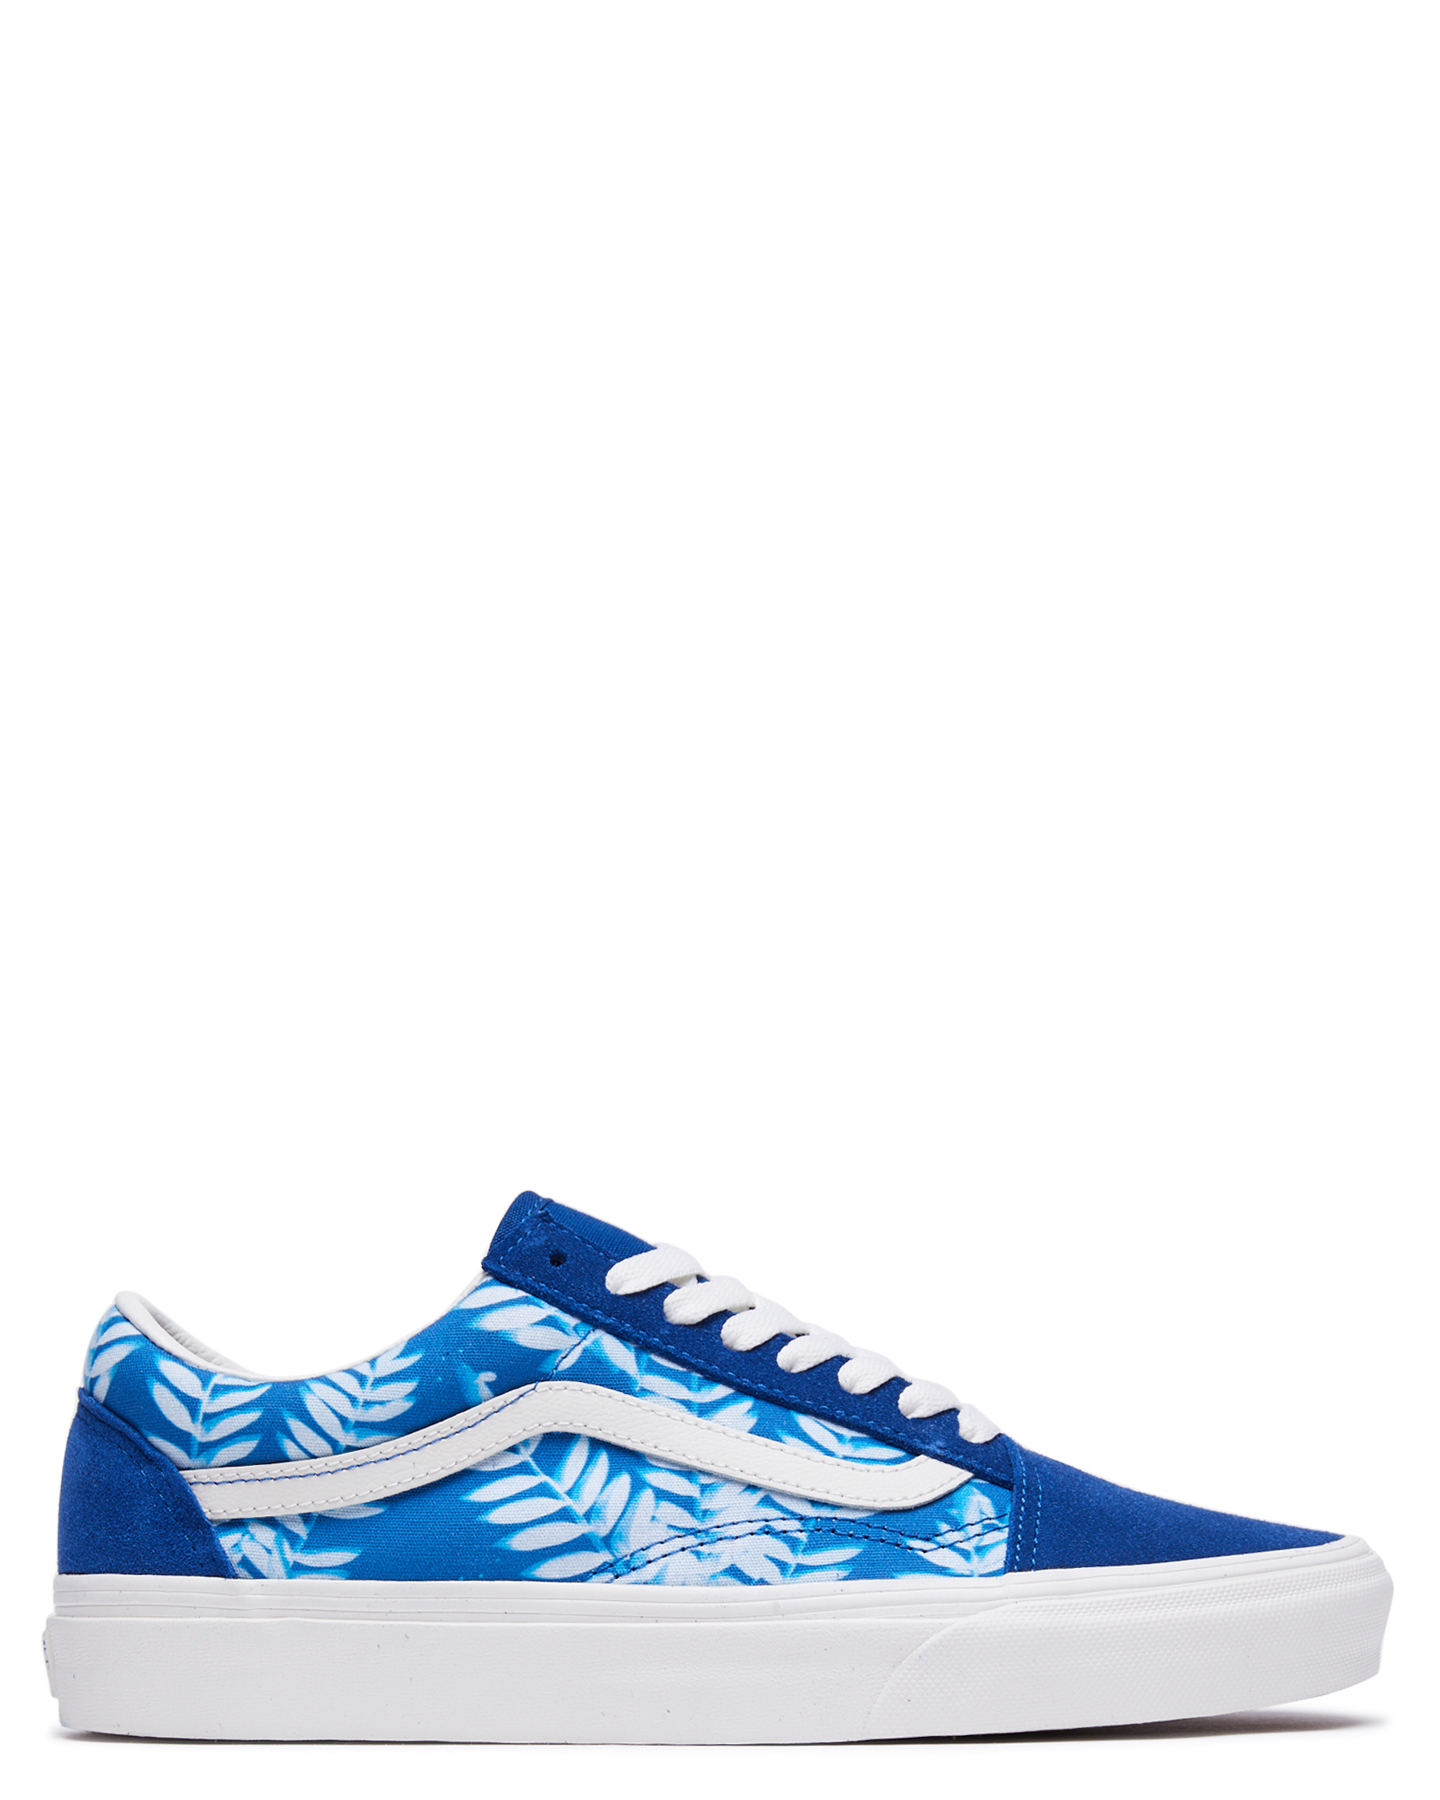 blue vans shoes womens